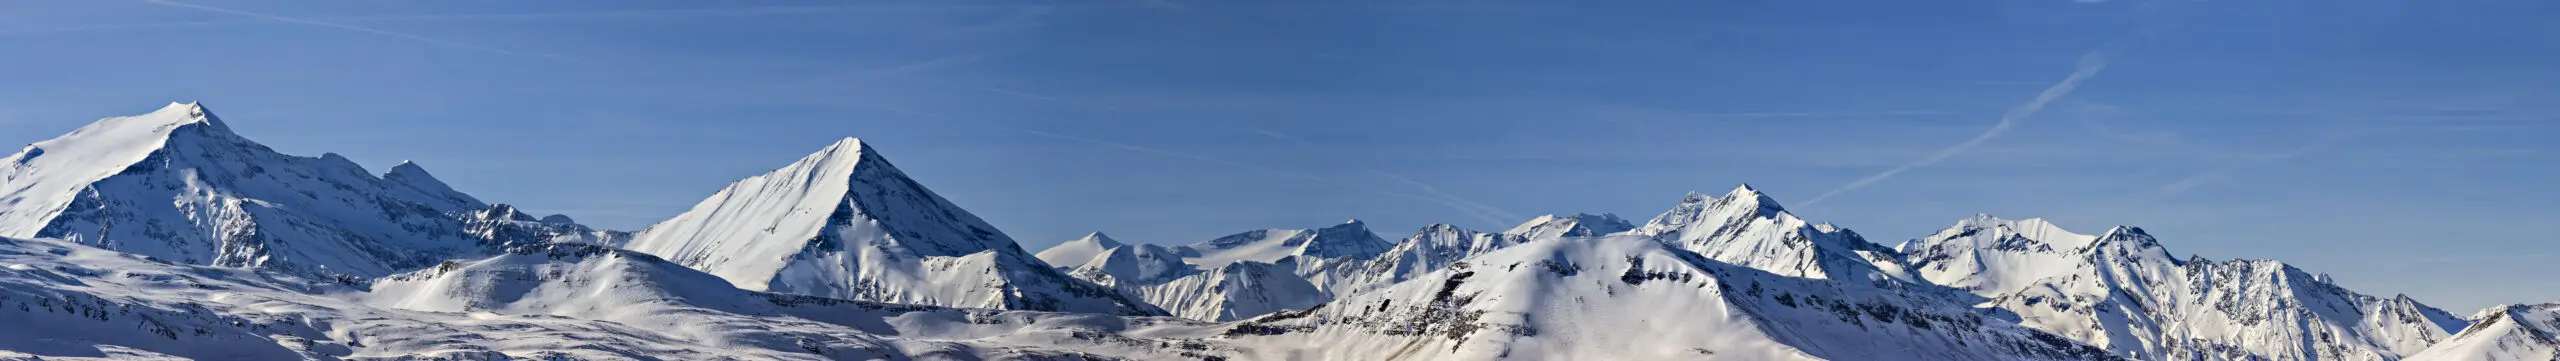 Wandbild (3606) Panorama Tauern präsentiert: Landschaften,Winter,Berge